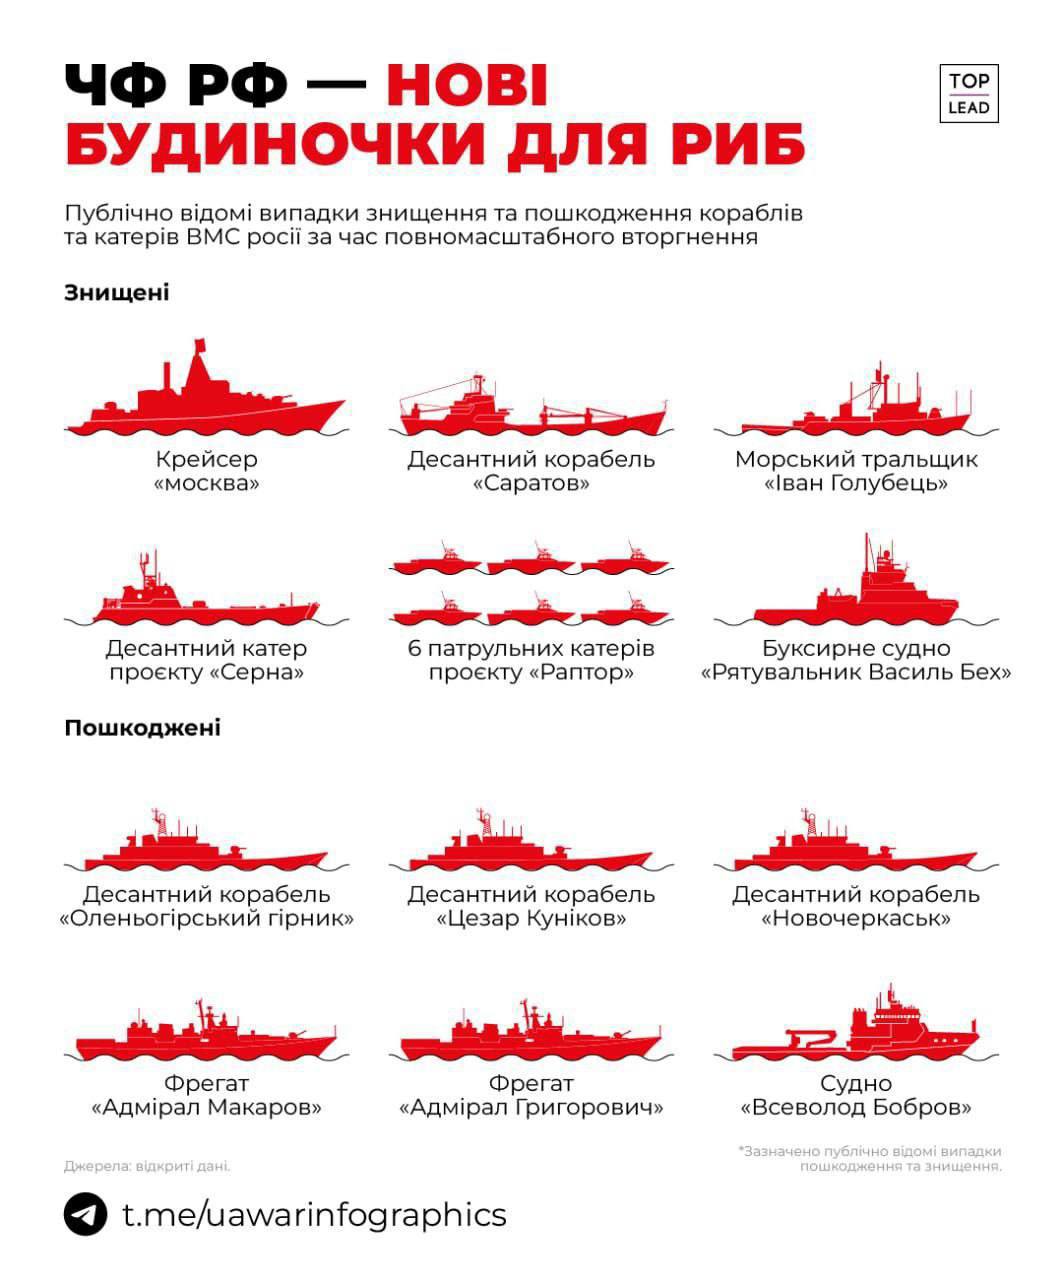 чорноморський флот росії - найбільший постачальник нерухомості для риб